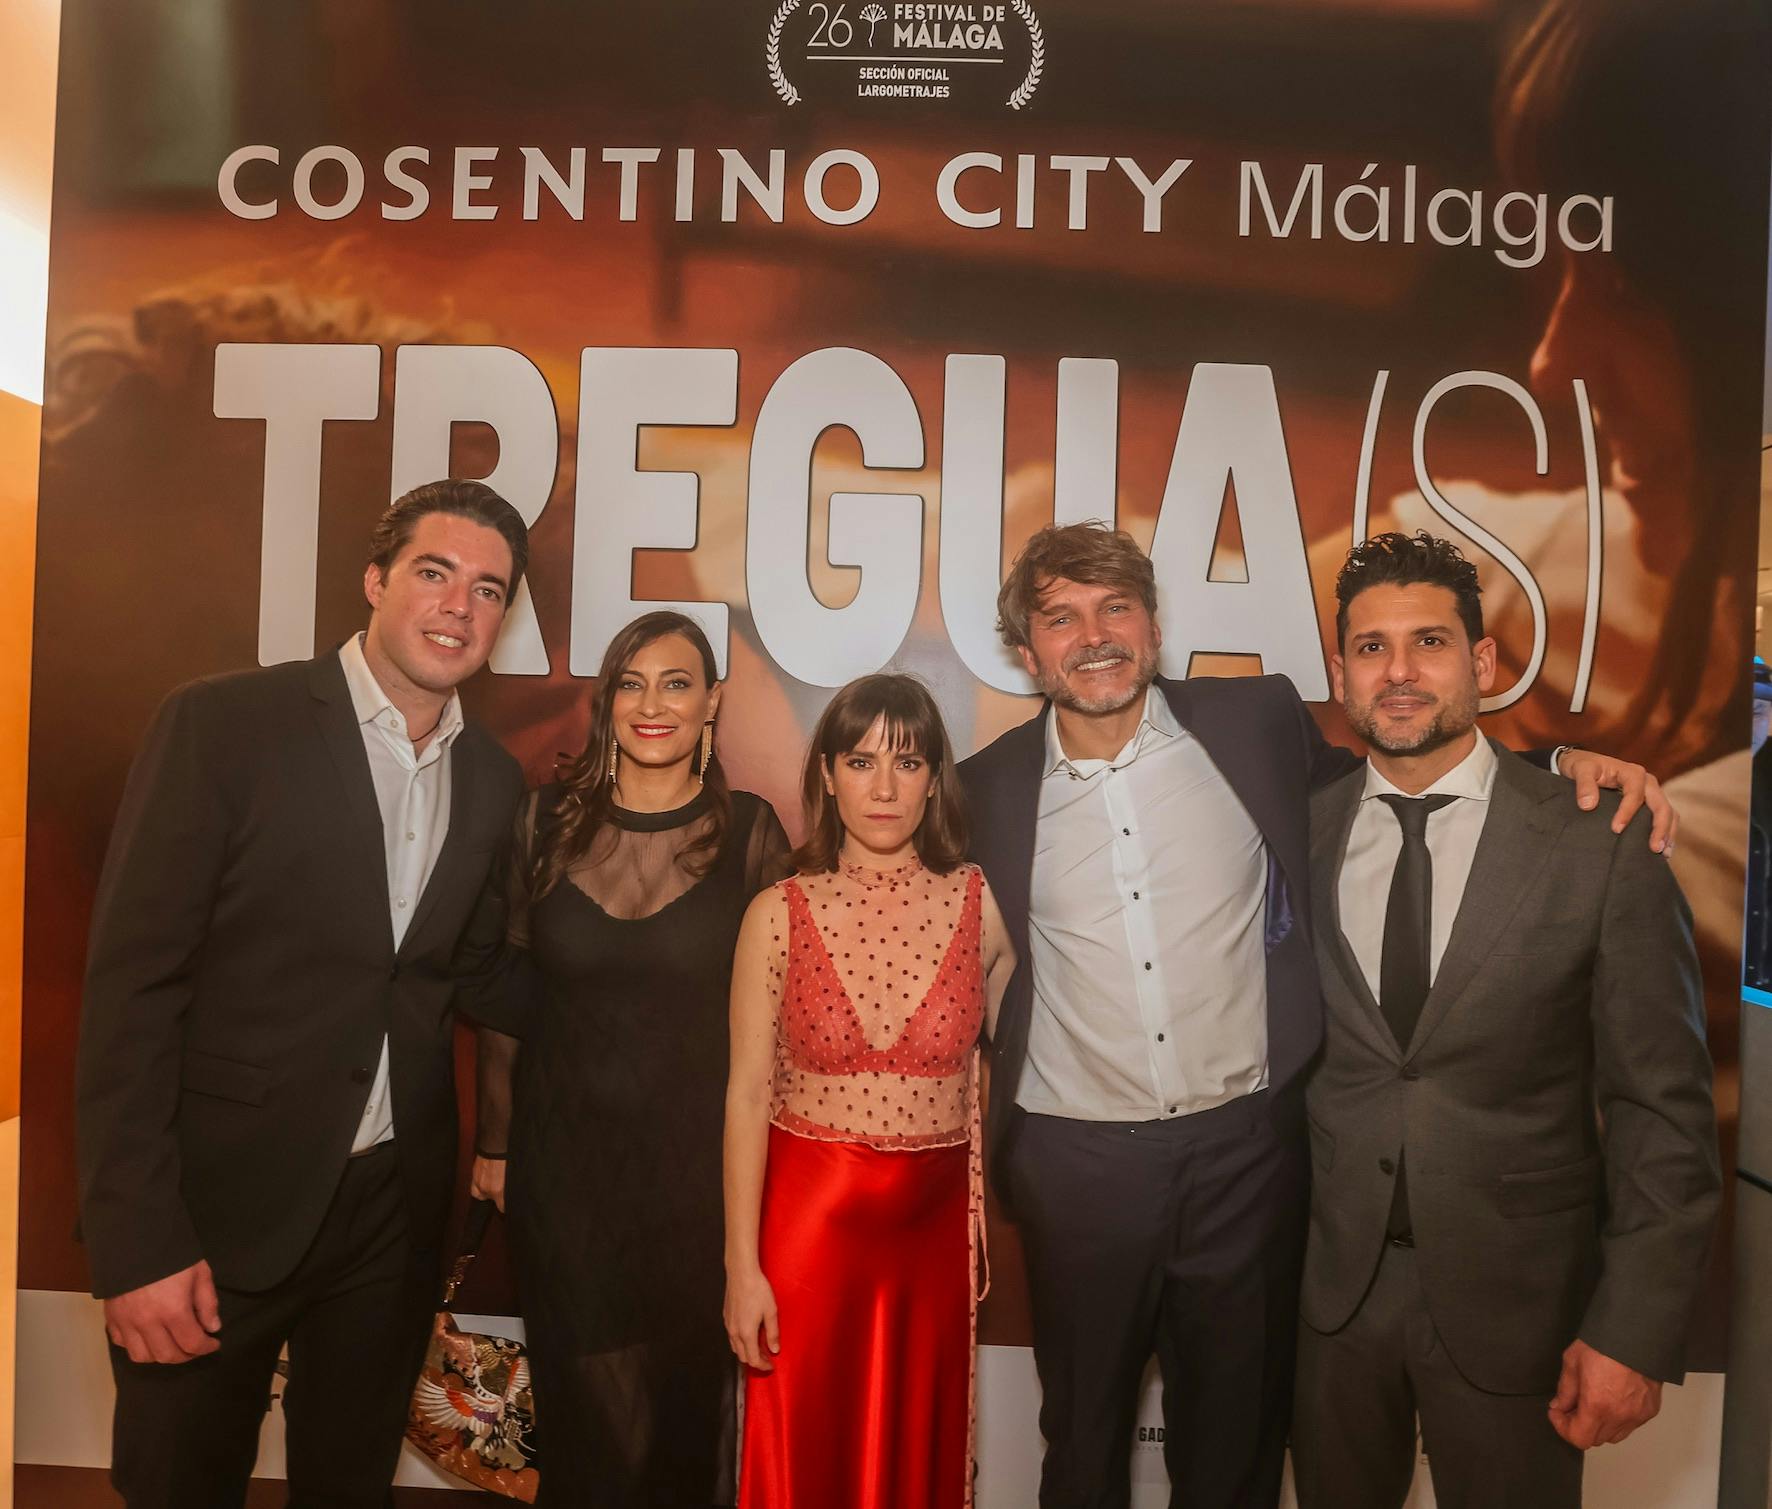 Imagen número 75 de Cosentino City Málaga con el Festival de Cine